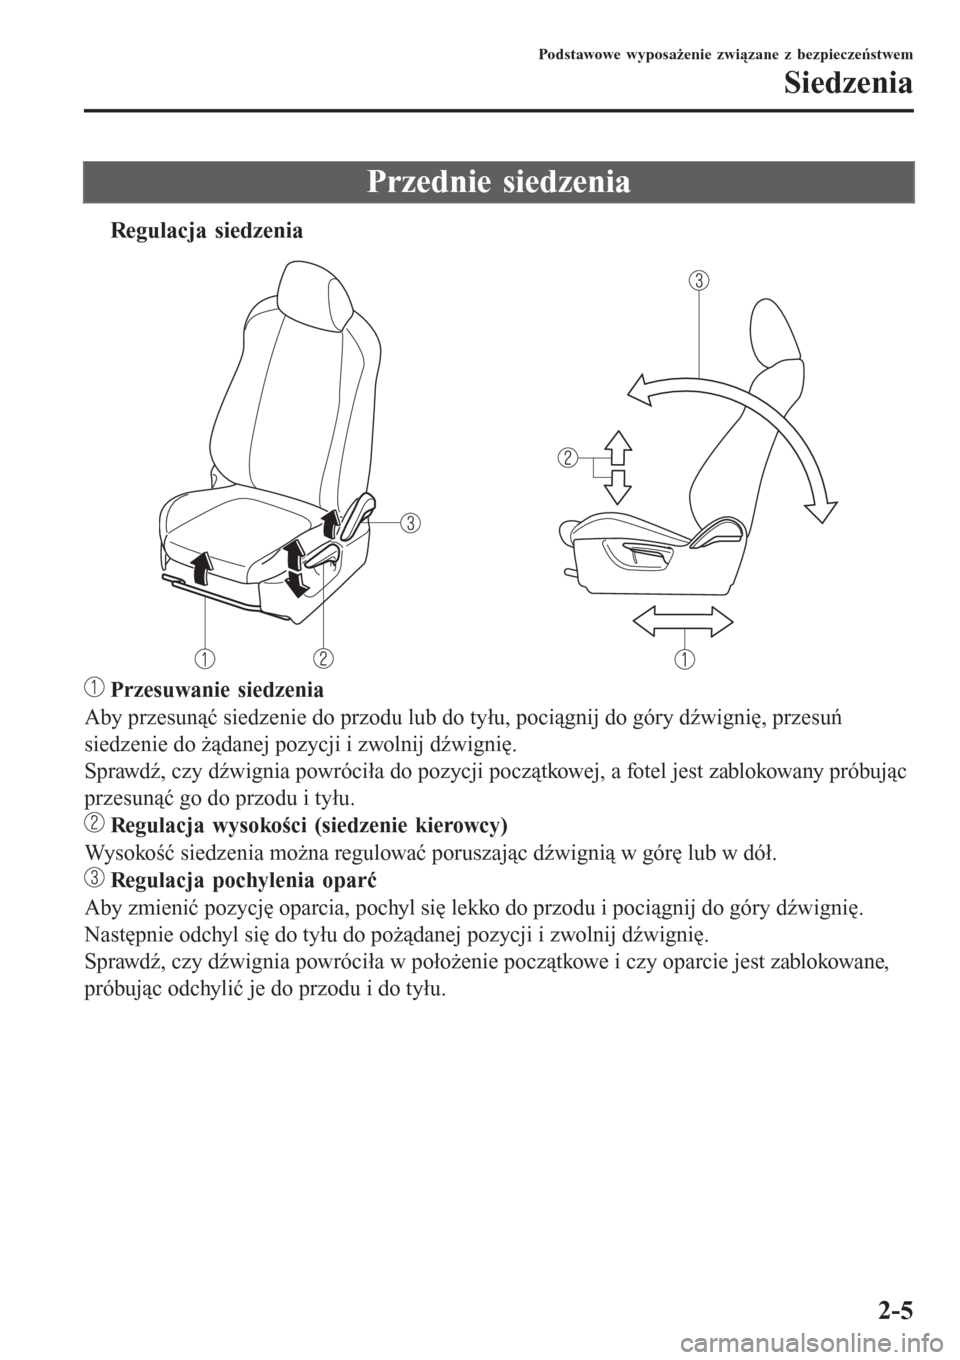 MAZDA MODEL CX-3 2015  Instrukcja Obsługi (in Polish) Przednie siedzenia
tRegulacja siedzenia
 Przesuwanie siedzenia
Aby przesunąć siedzenie do przodu lub do tyłu, pociągnij do góry dźwignię, przesuń
siedzenie do żądanej pozycji i zwolnij dźwi